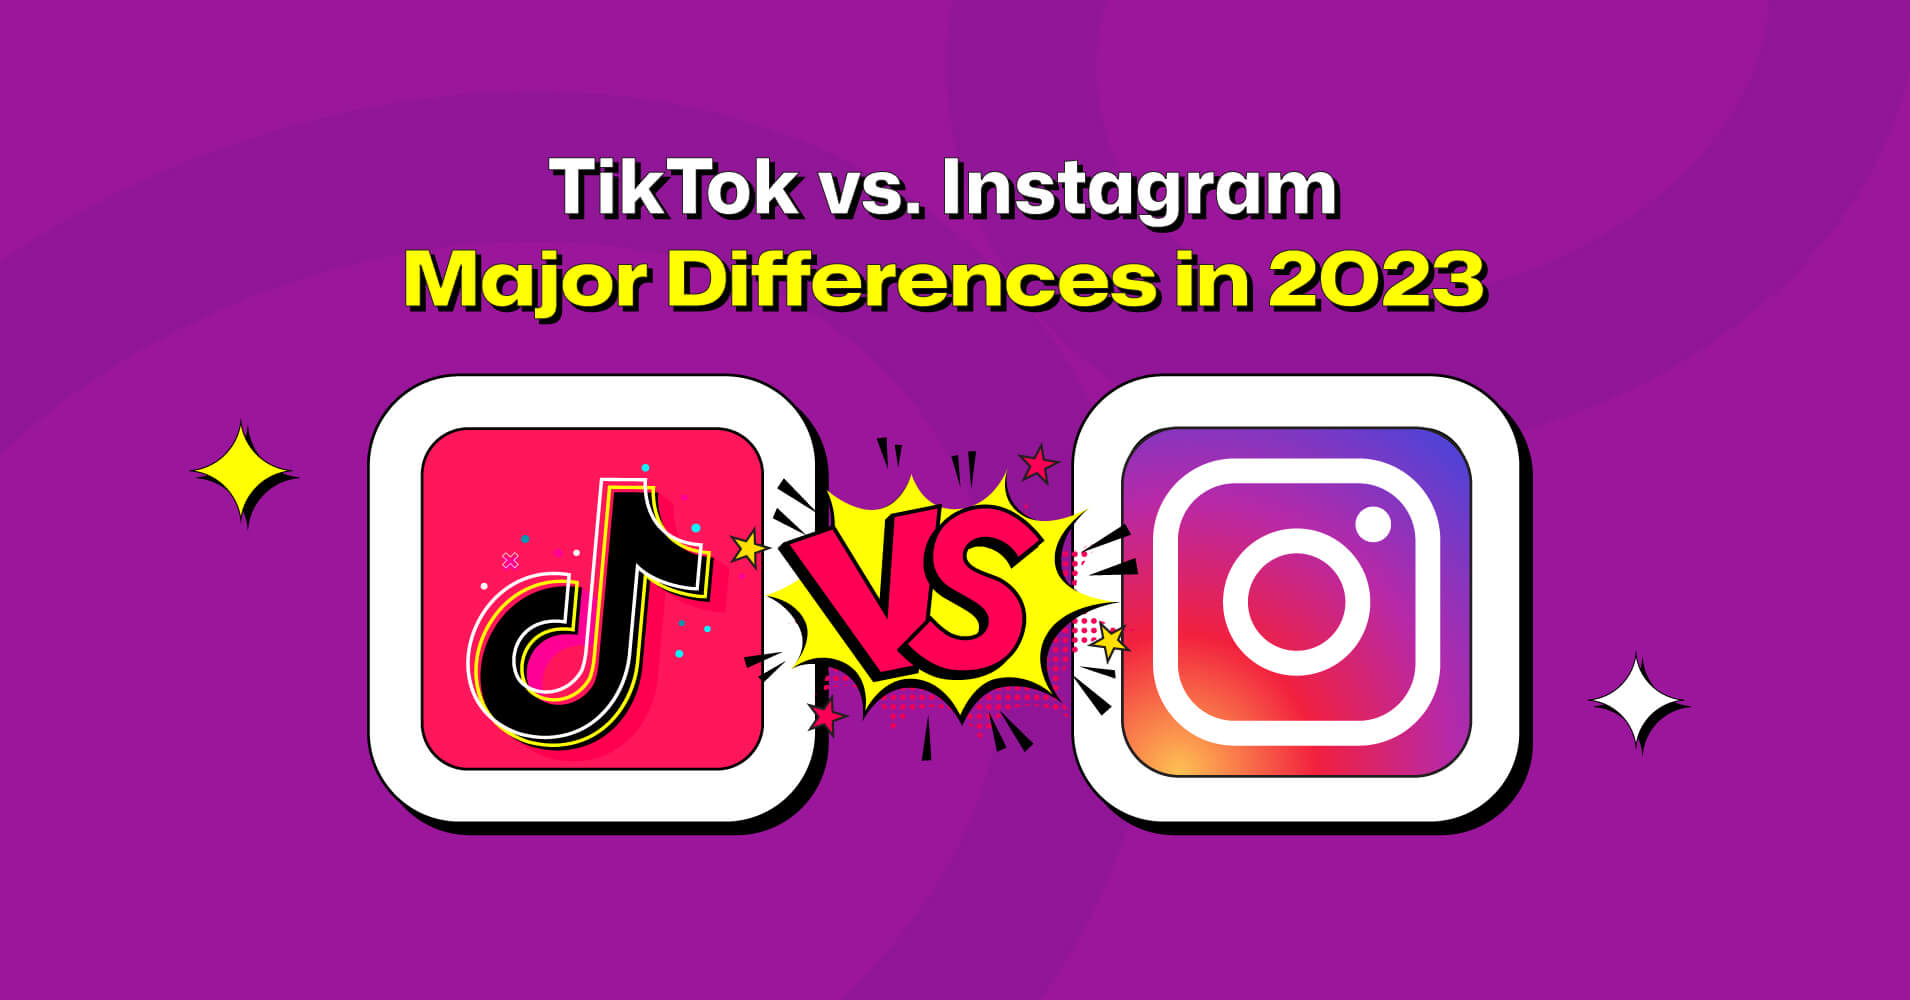 TikTok vs. Instagram: Major Differences in 2023